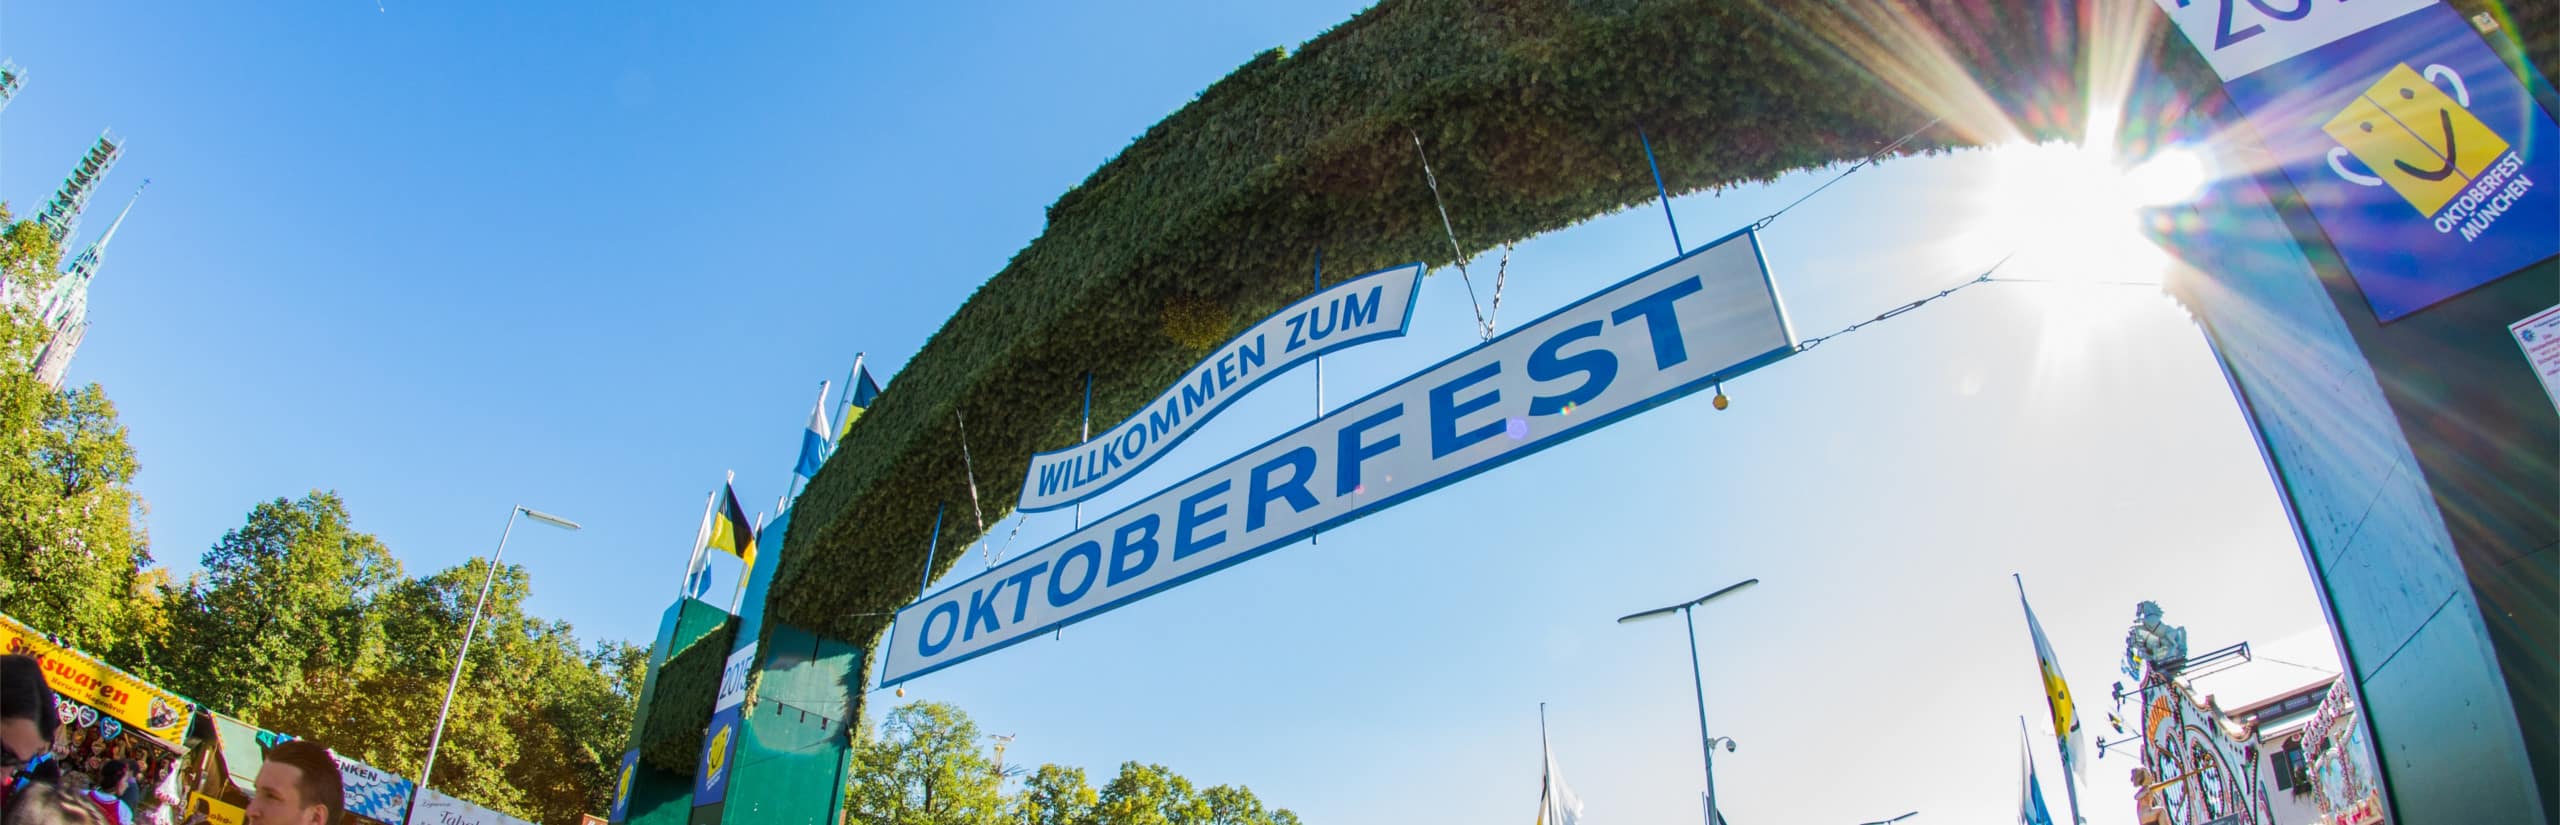 Oktoberfest München – Limousinen-Service zum größten Volksfest der Welt